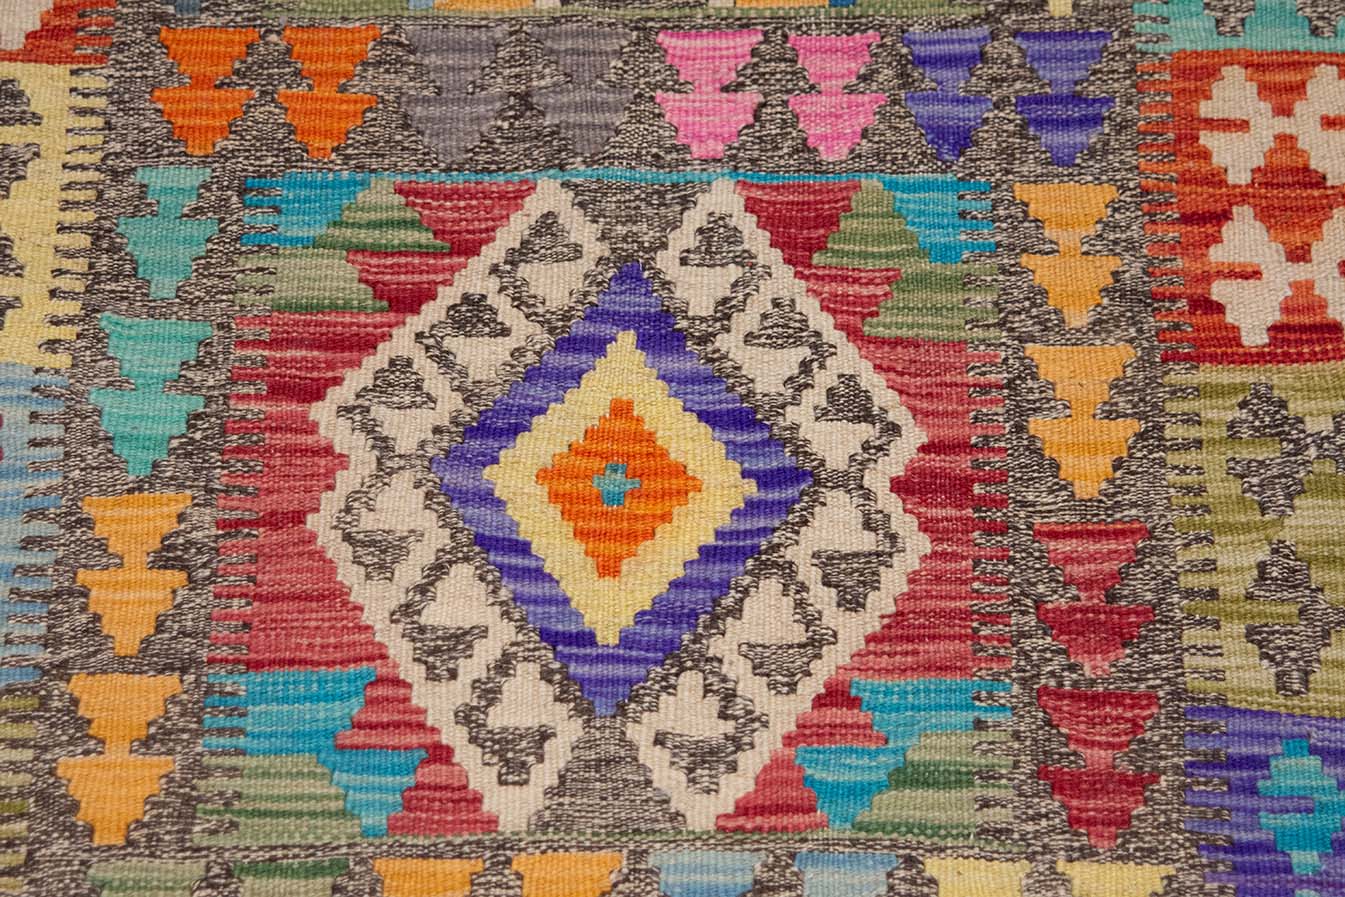 Small Kilim Rug, Multicolor Geometric Handmade Wool Kilims